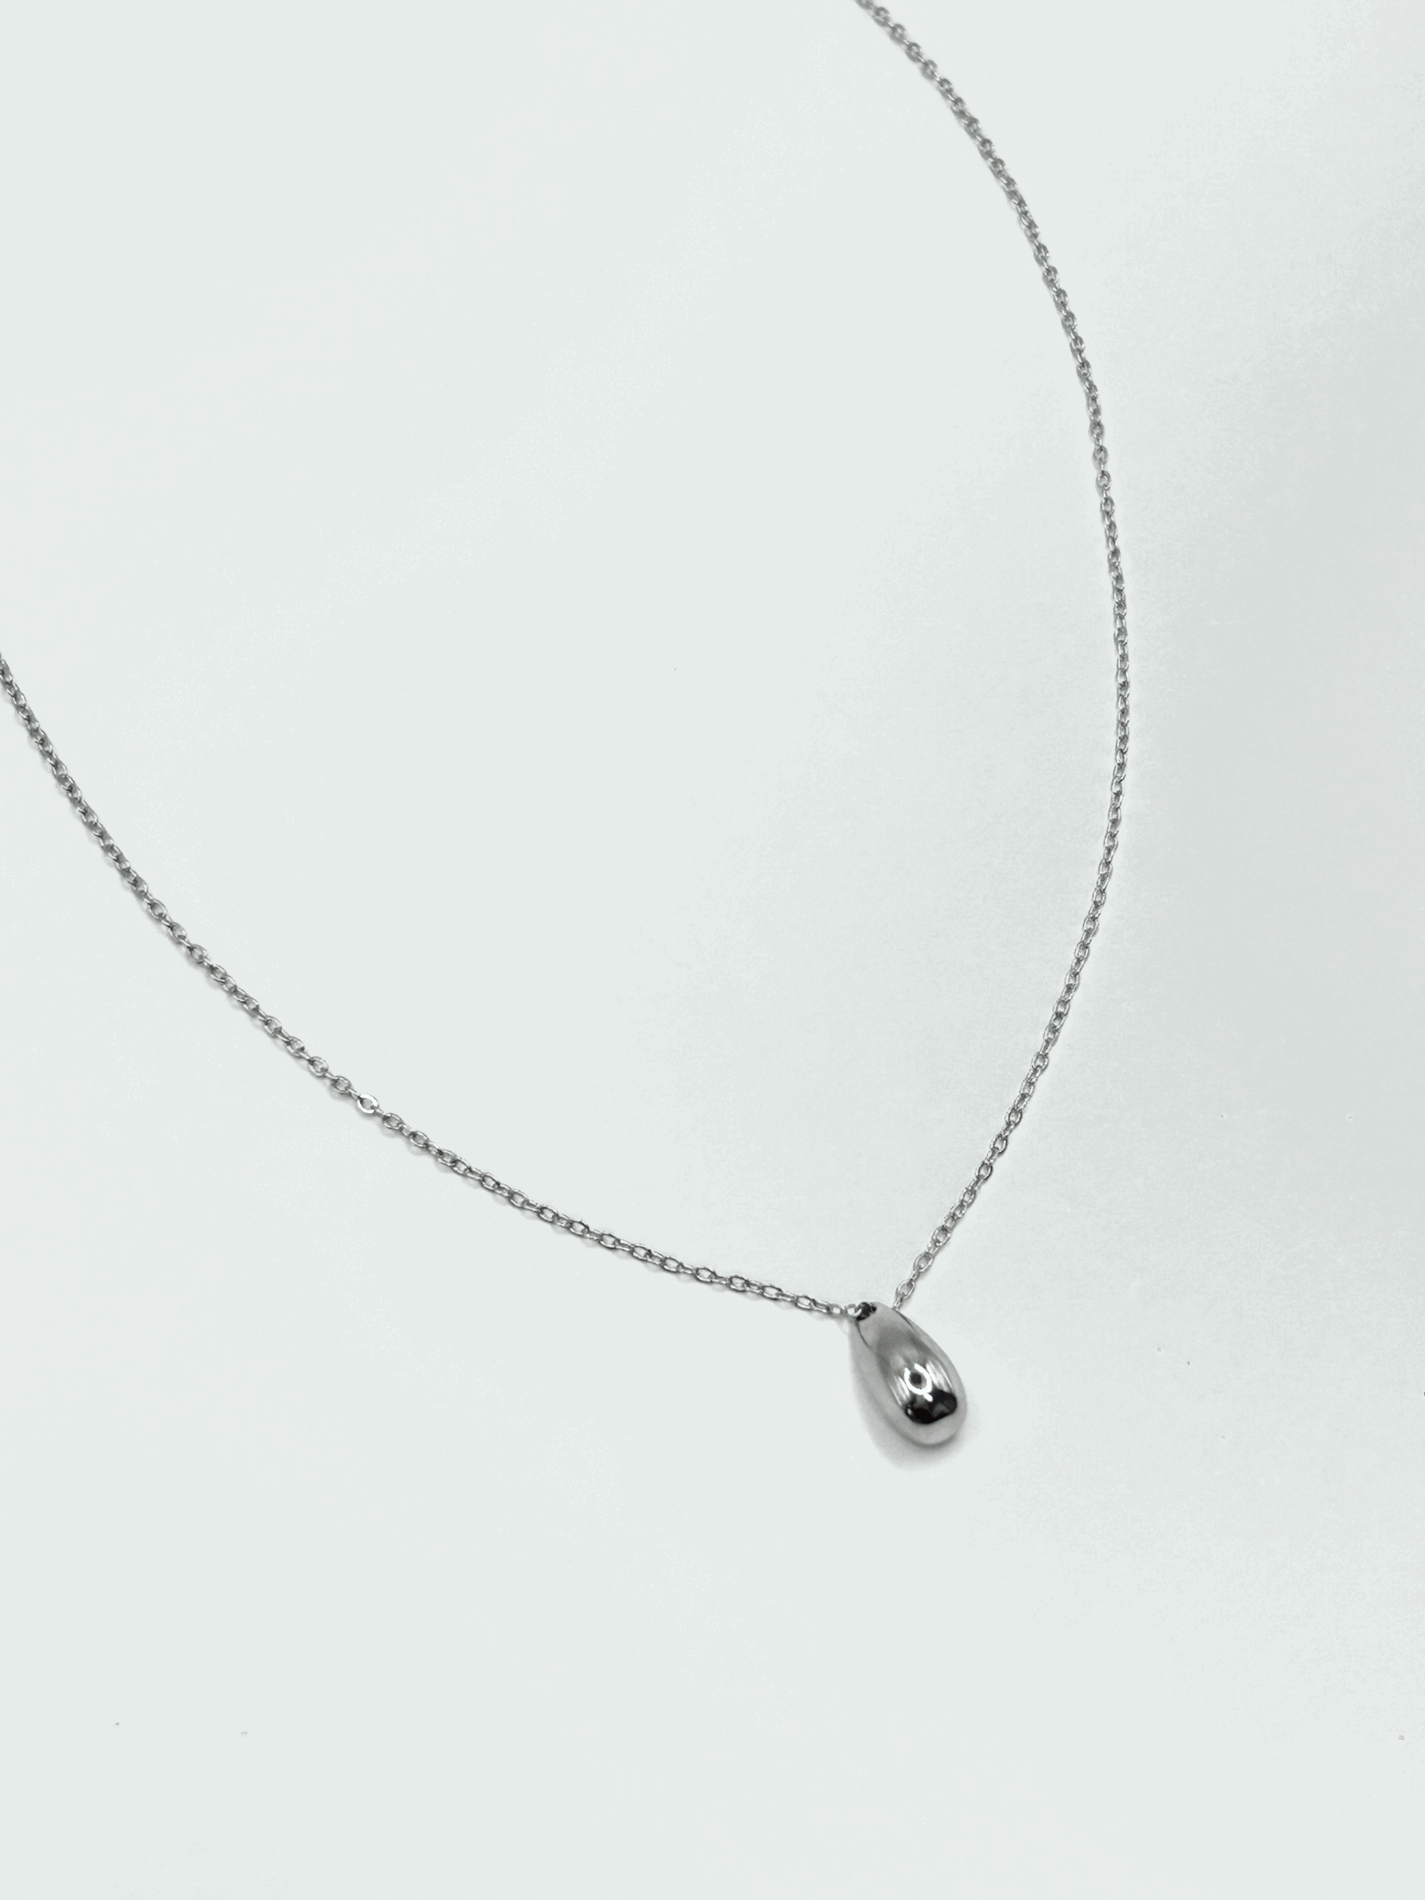 rain drop silver necklace